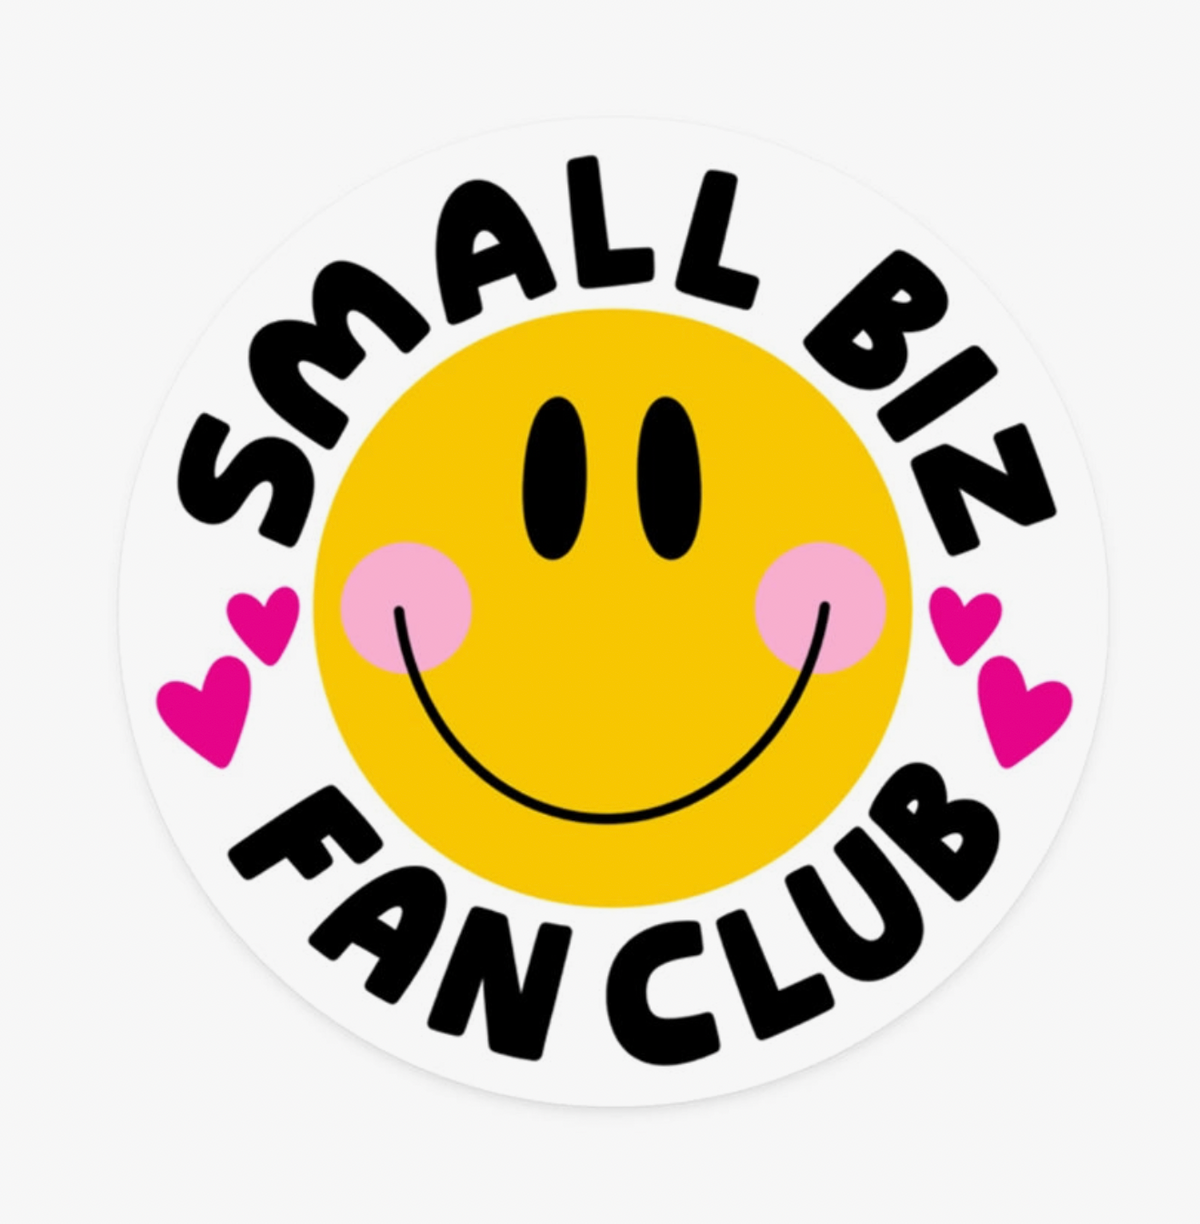 Small Biz Fan Club Sticker